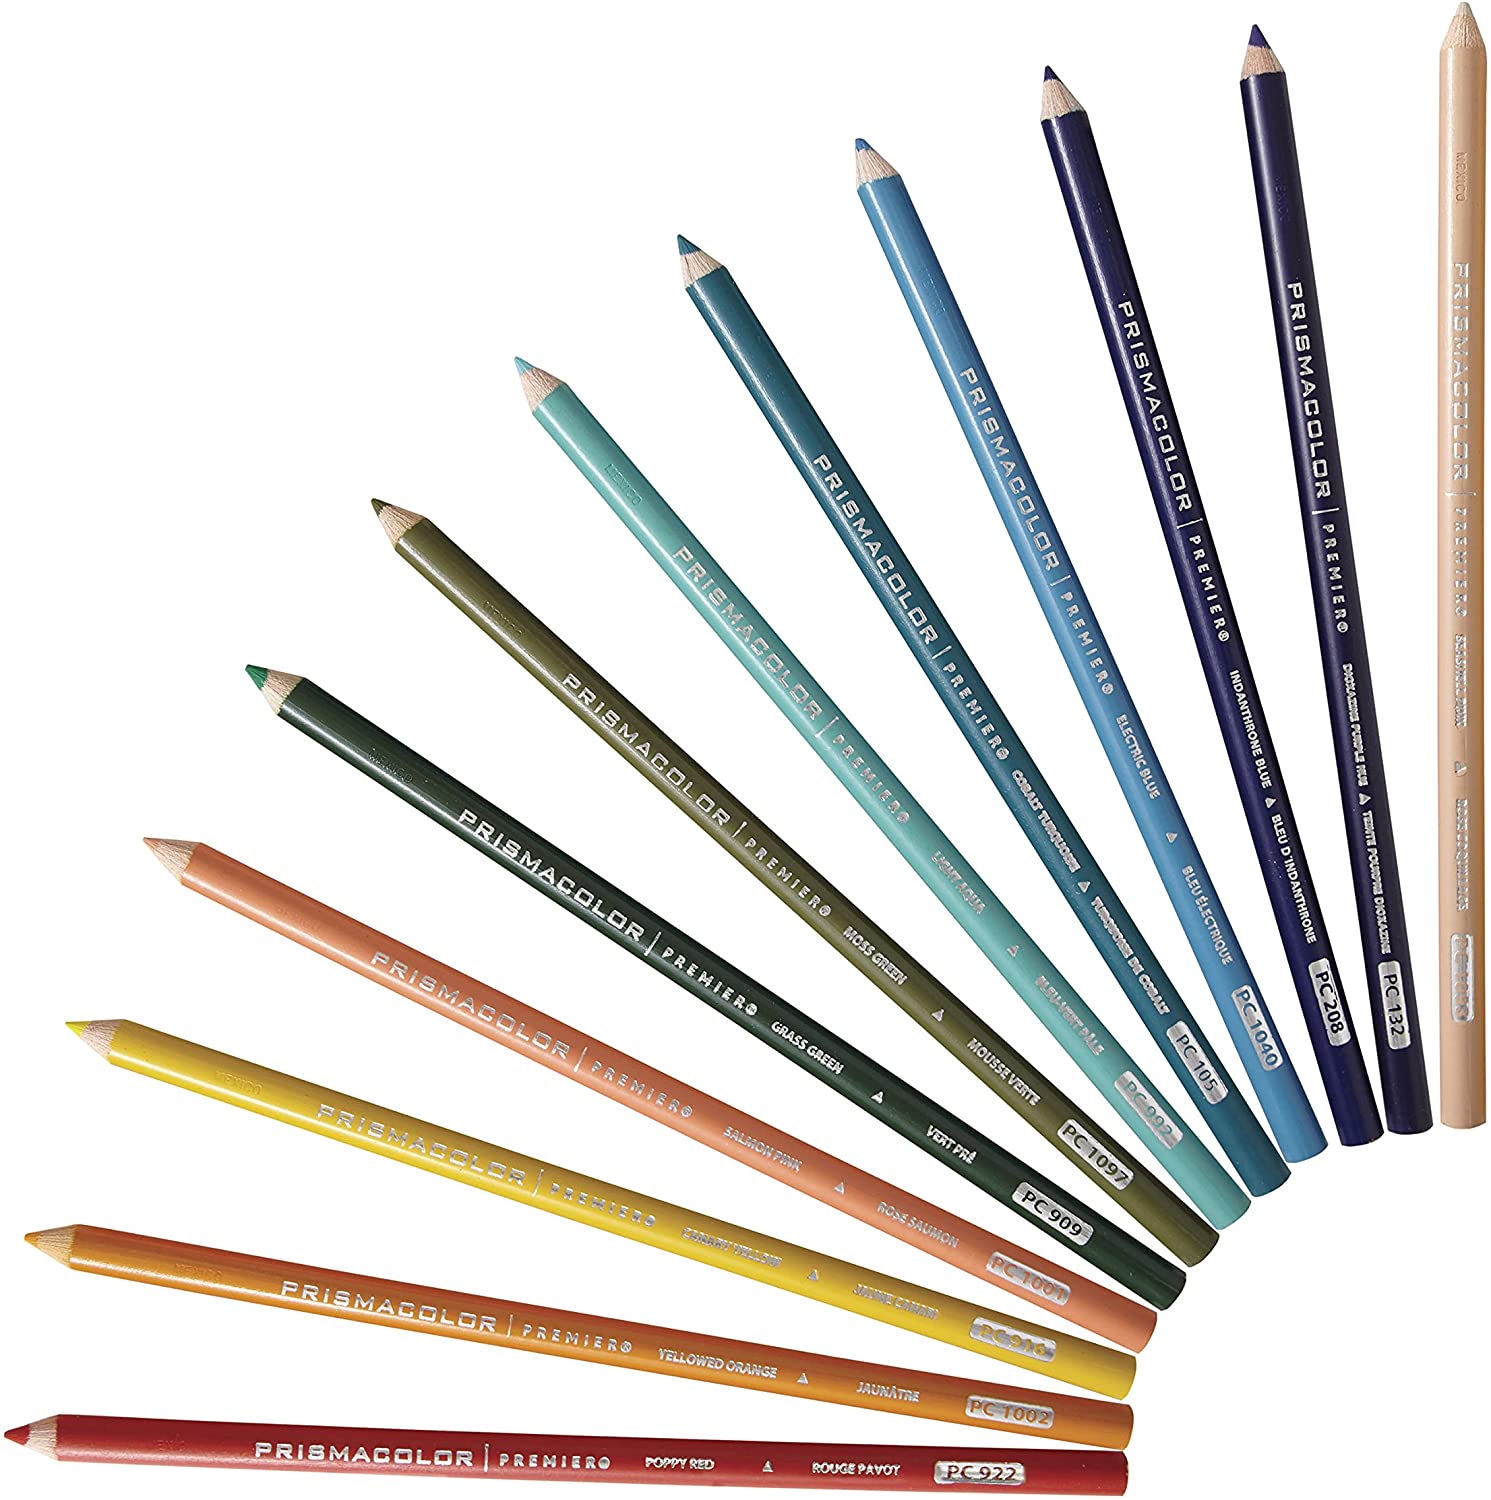 Sanford Prismacolor Premier Colored Pencils color lineup